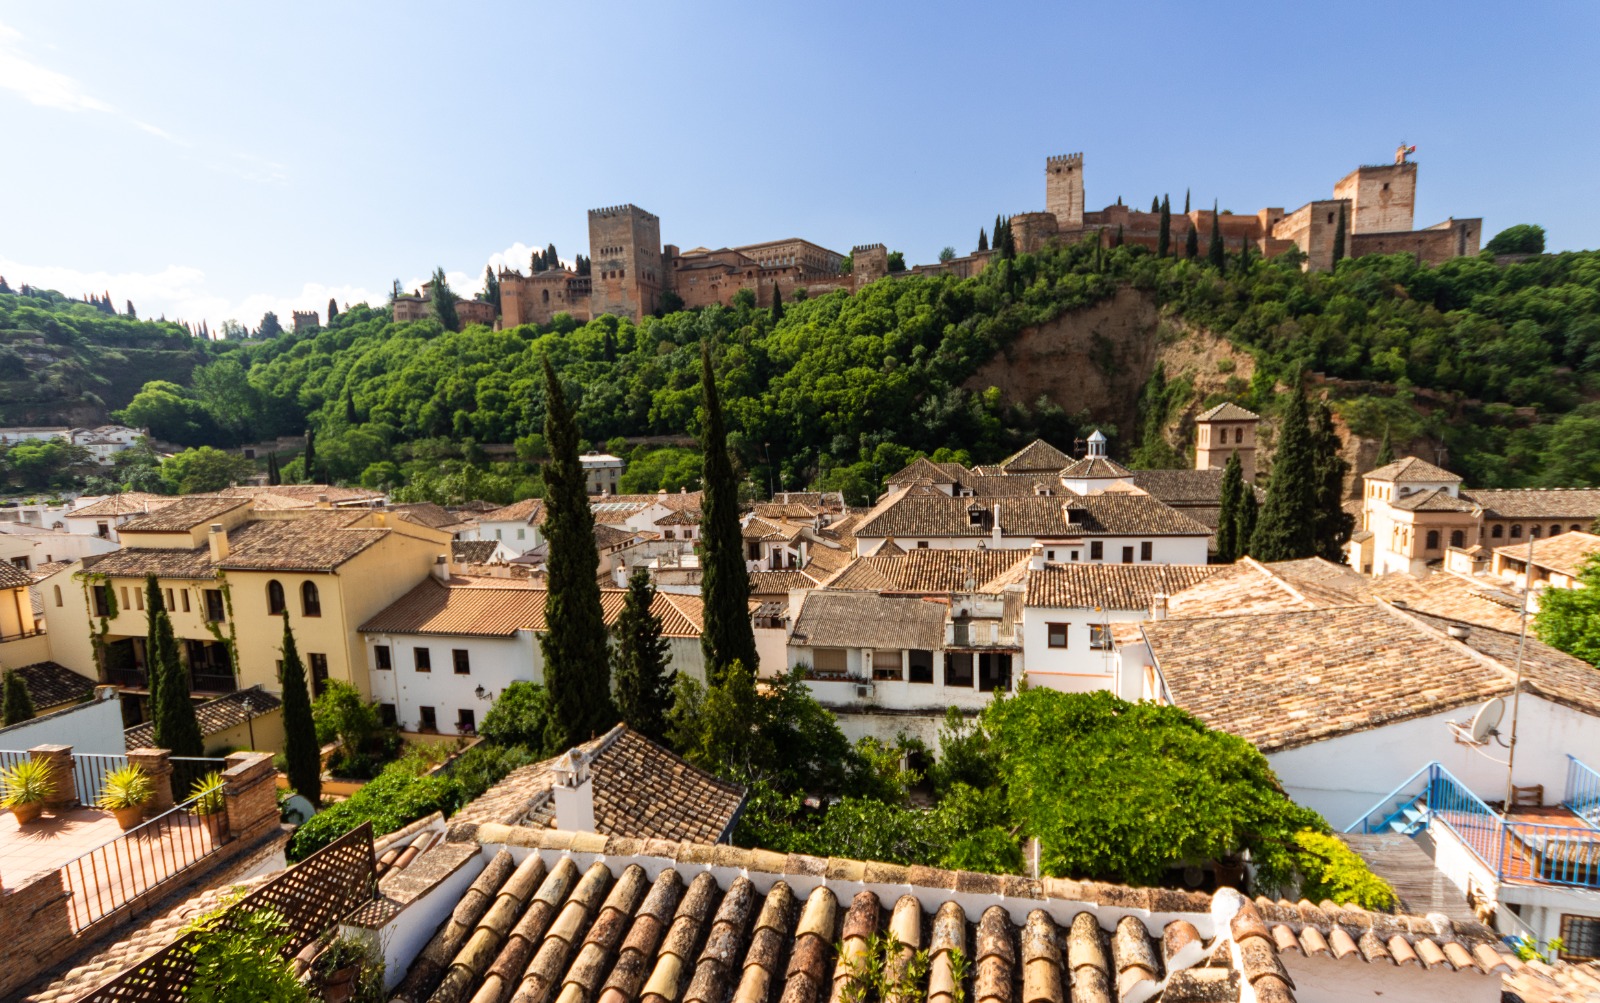 EXCLUSIVO apartamento-dúplex con gran terraza con vistas a la Alhambra